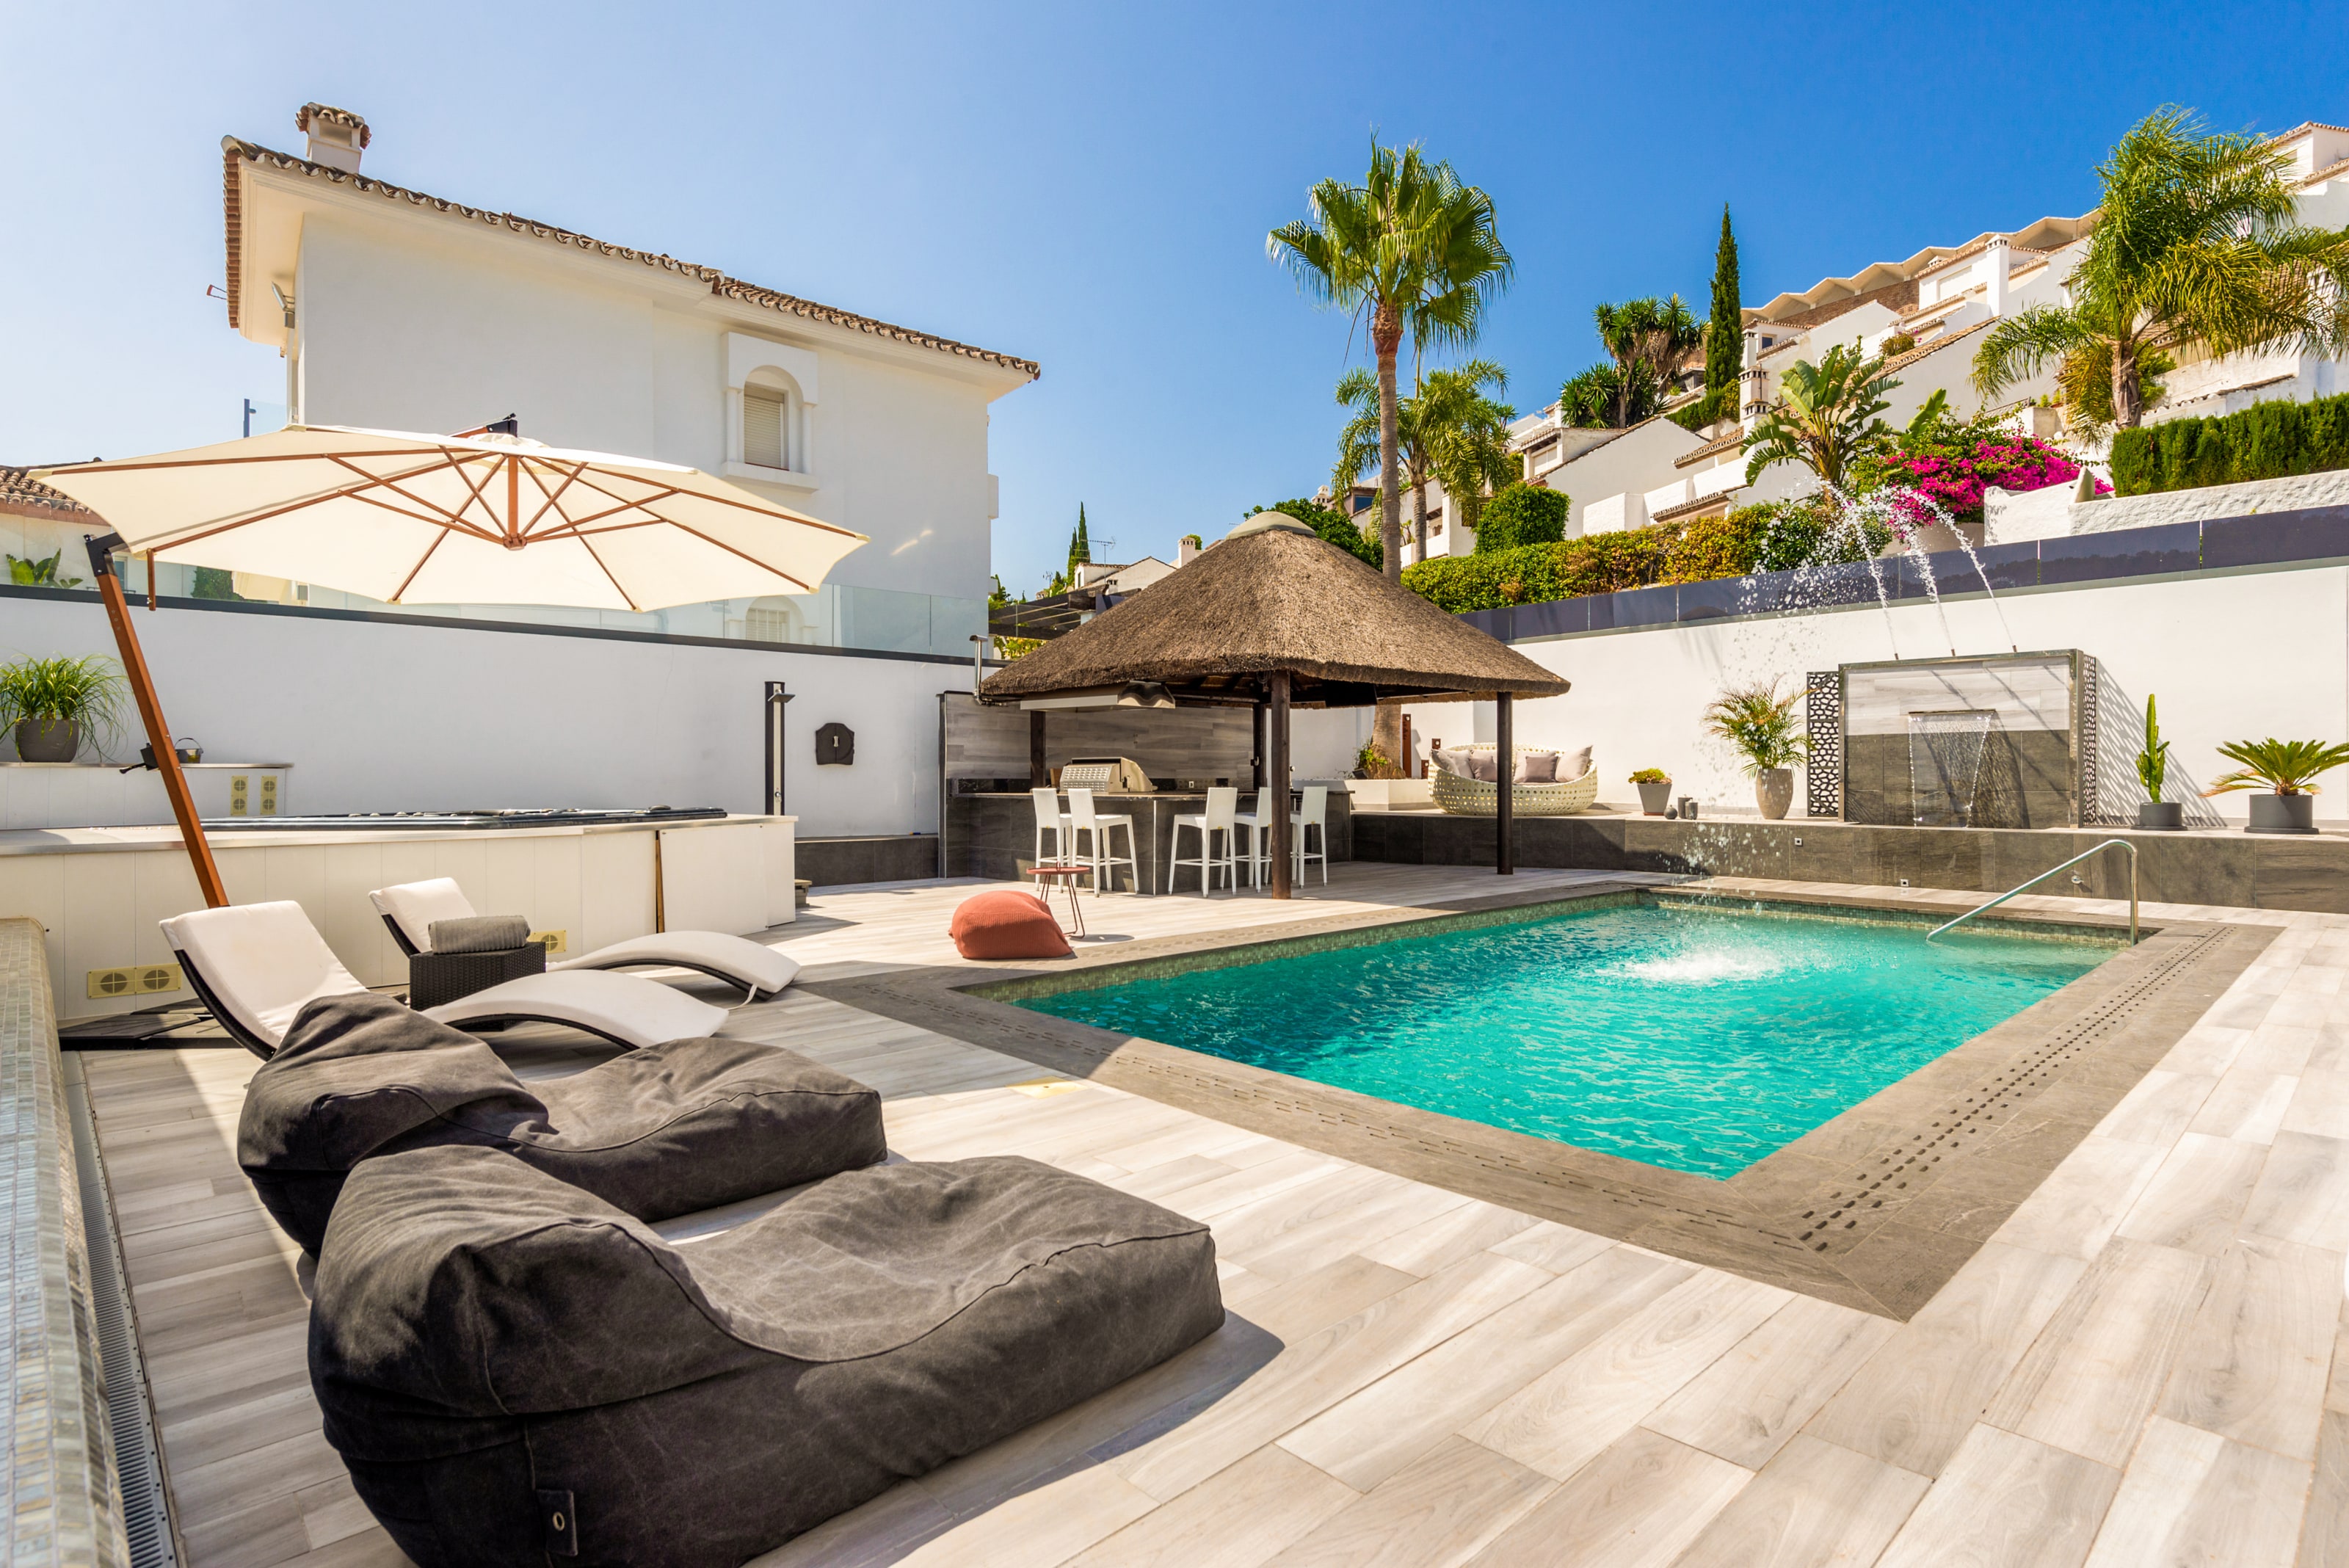 Villa Aata Marbella - Vue extérieure de la villa avec piscine